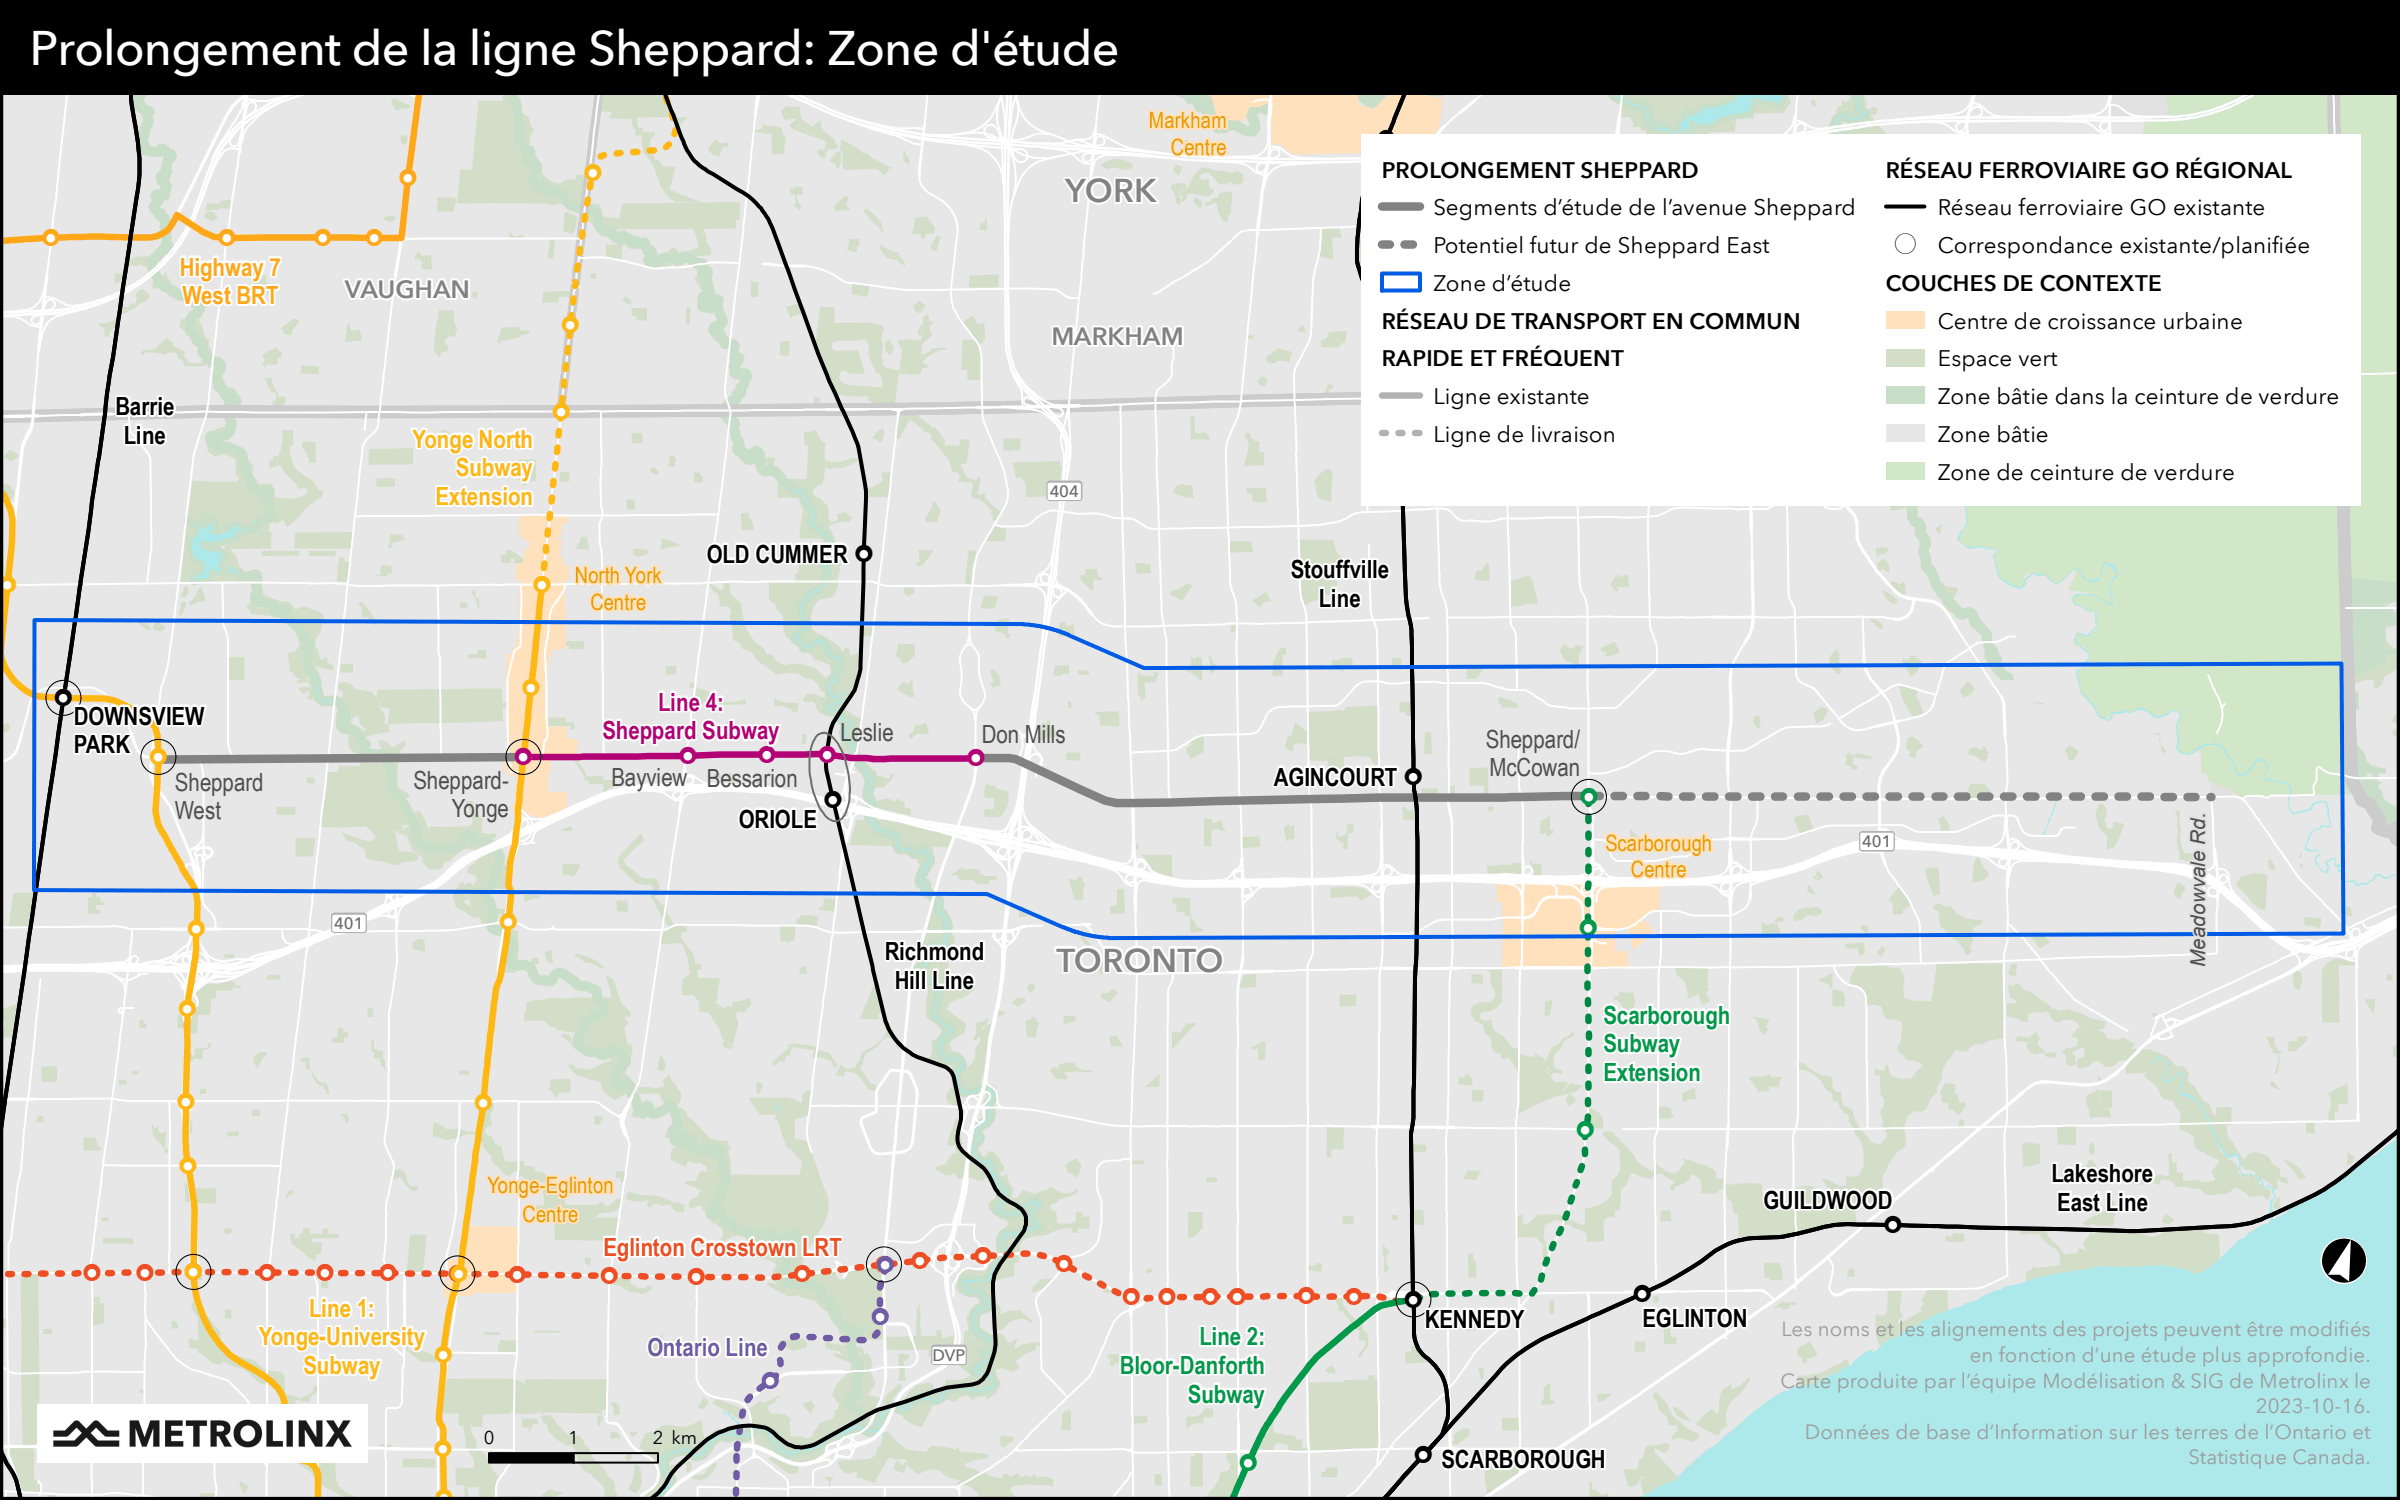 Prolongement de la ligne Sheppard: Zone d'étude